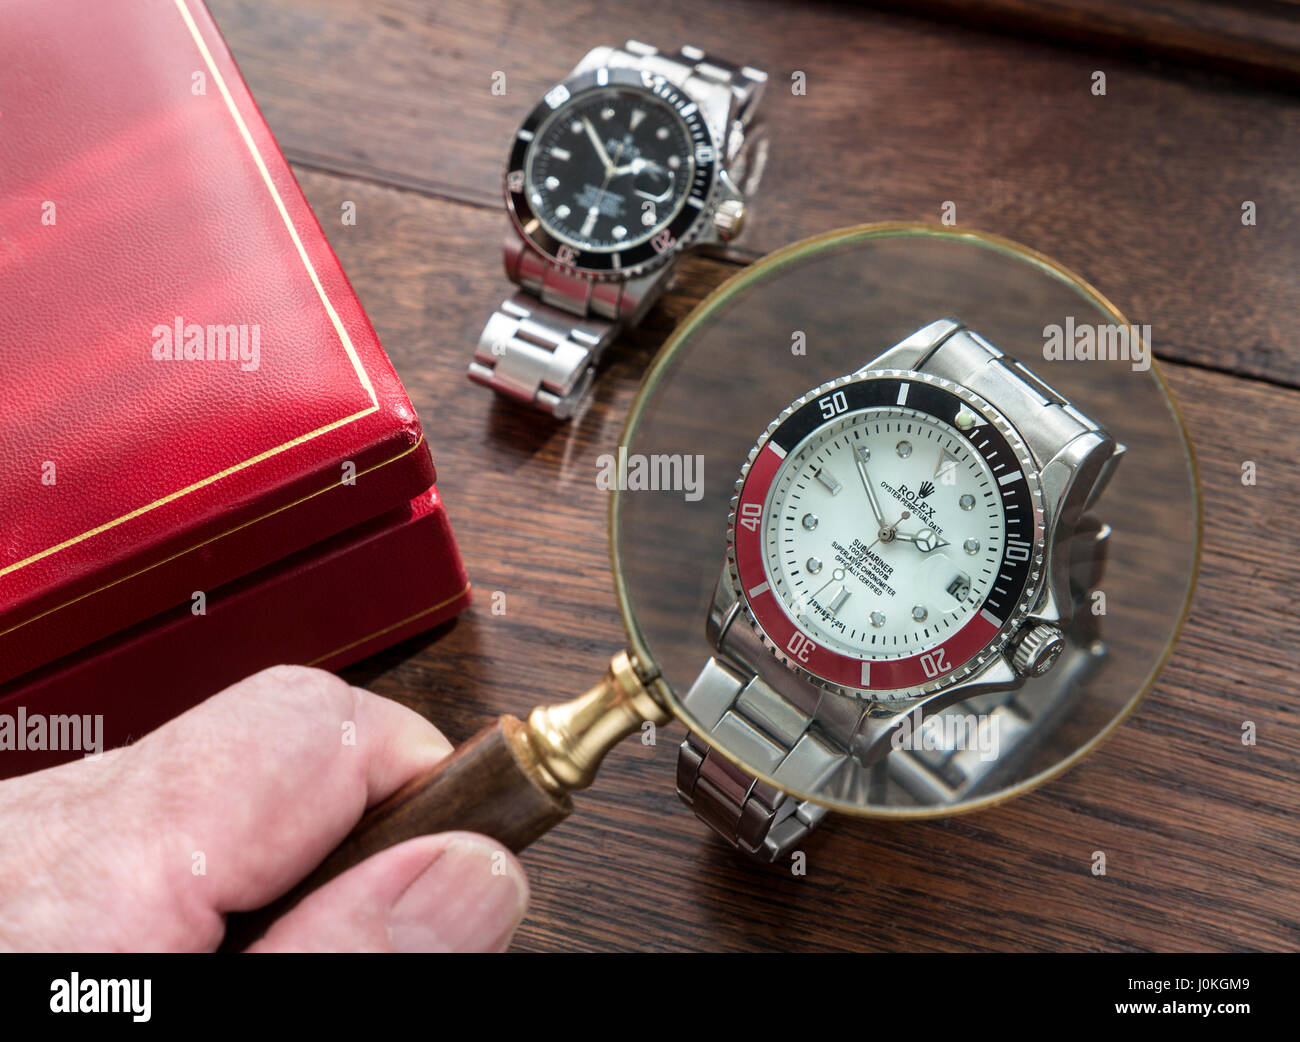 ROLEX GEFÄLSCHTE UHREN Vergrößerungsglas und gefälschte Replik Kopie gefälschte Männer Rolex Uhren auf alten hölzernen Schreibtisch mit rotem Leder Uhrengehäuse Stockfoto